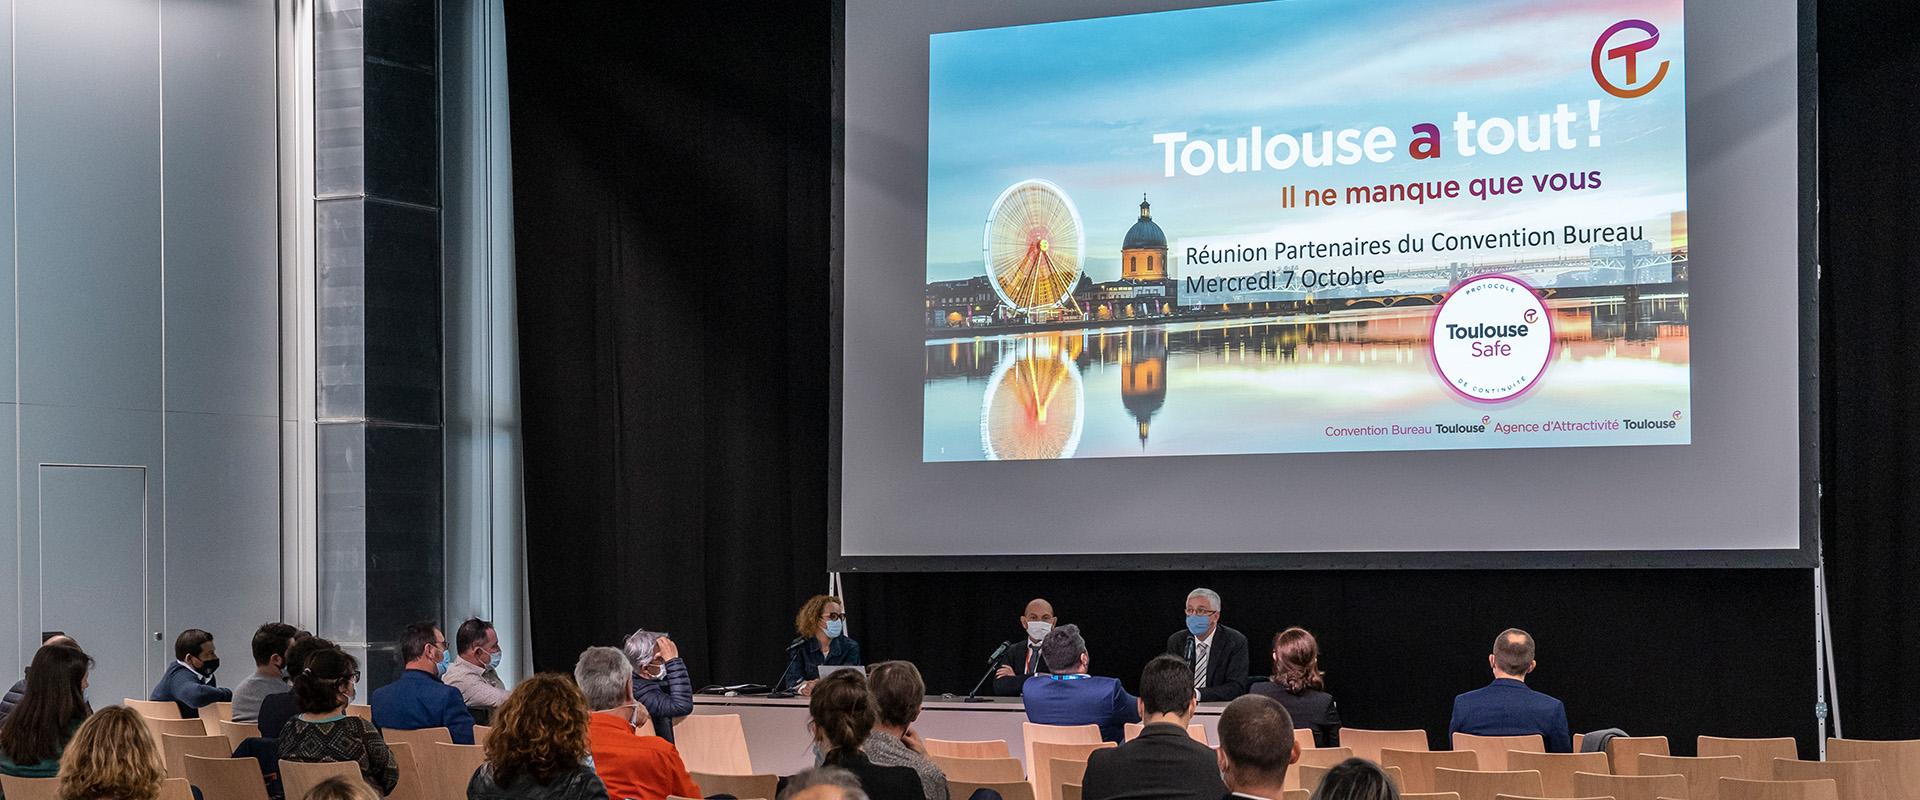 Charte Toulouse Safe - protocole de continuité